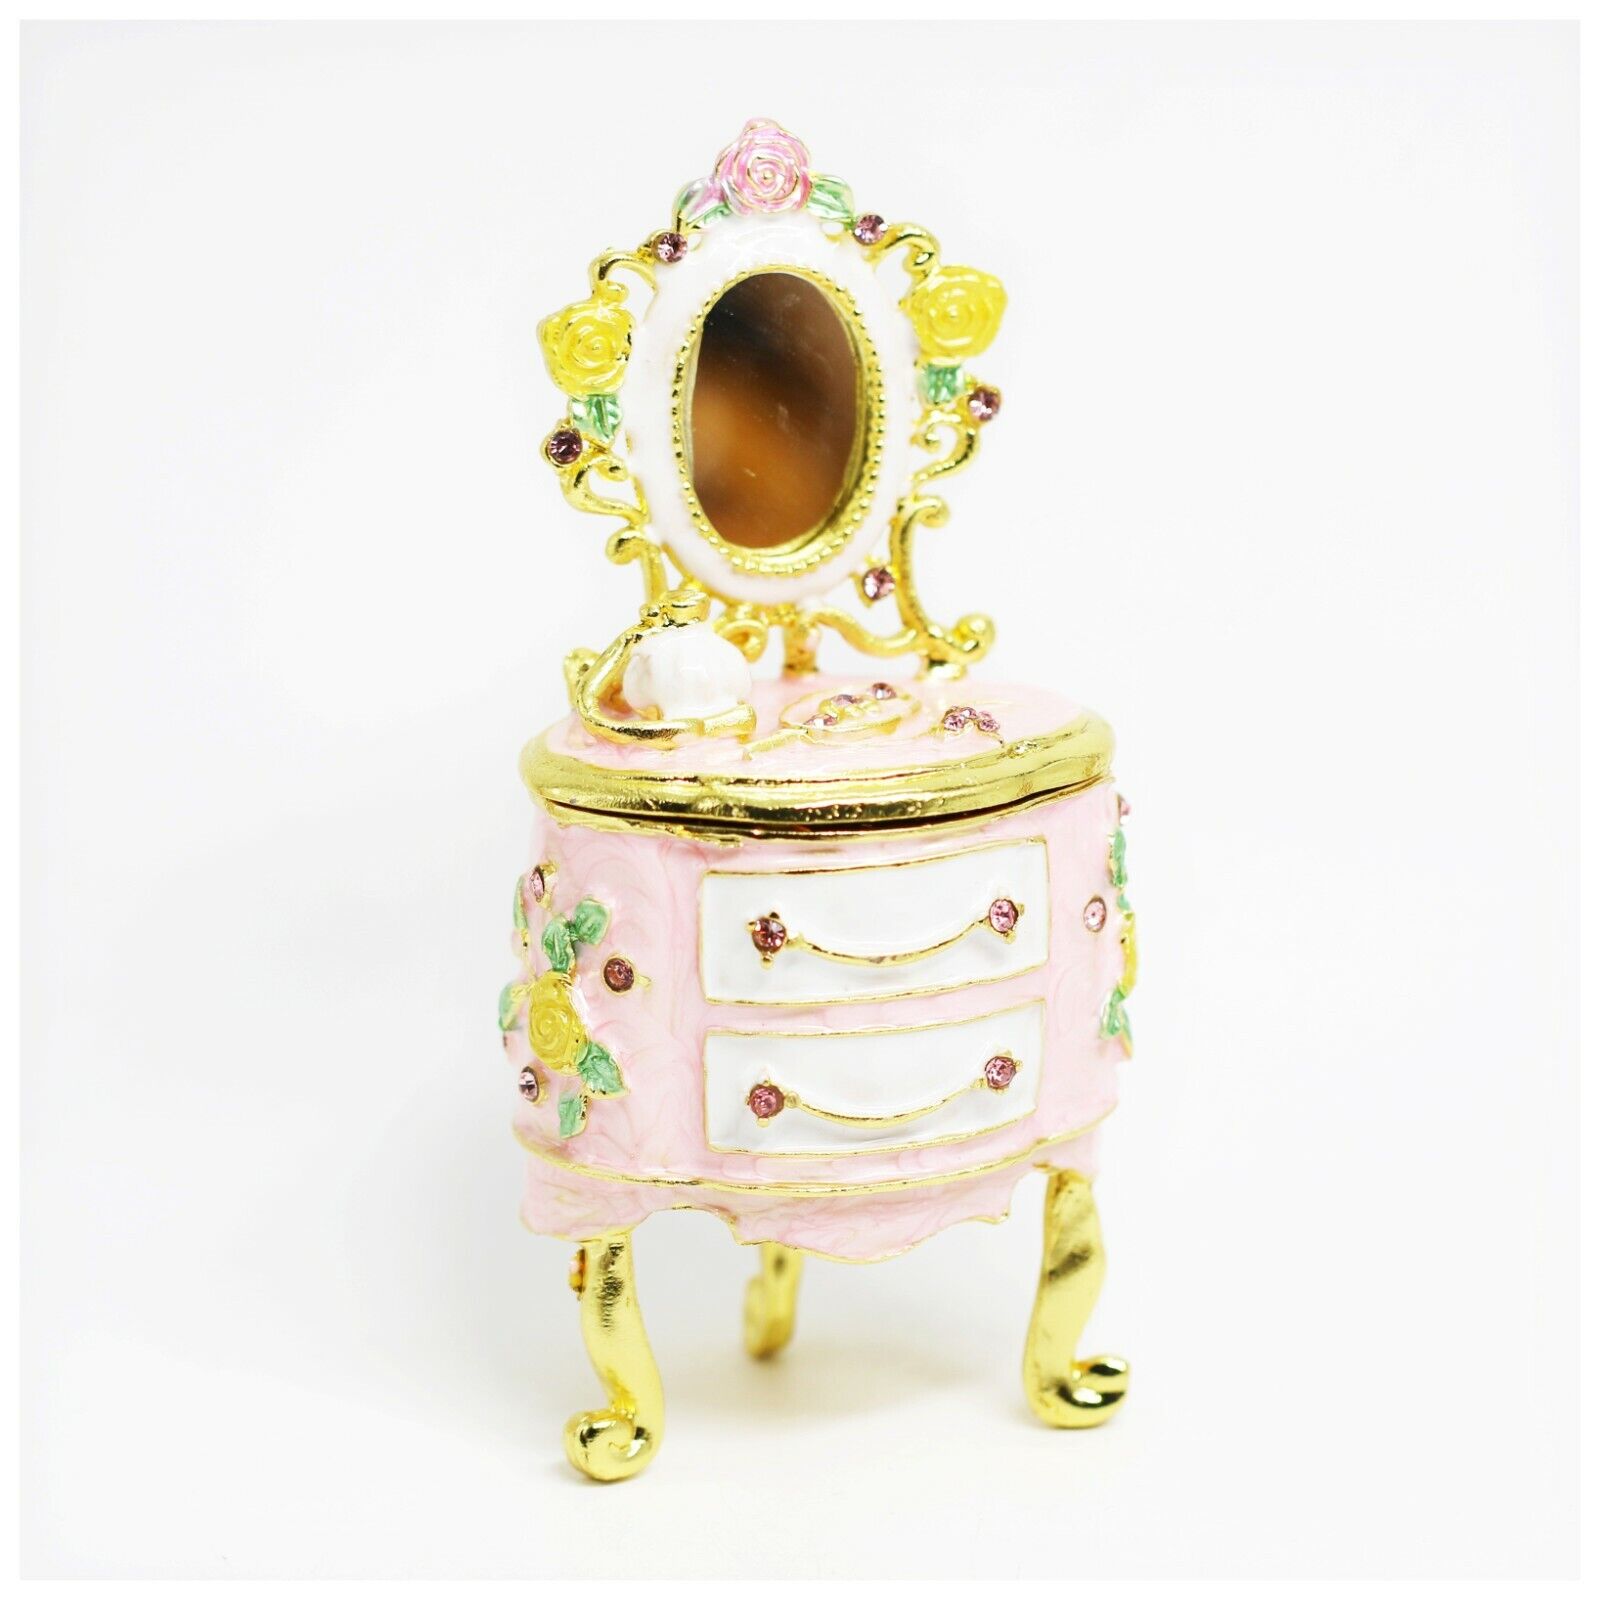 Bejeweled Enameled Trinket Box/Figurine With Rhinestones-Vintage Pink Vanity